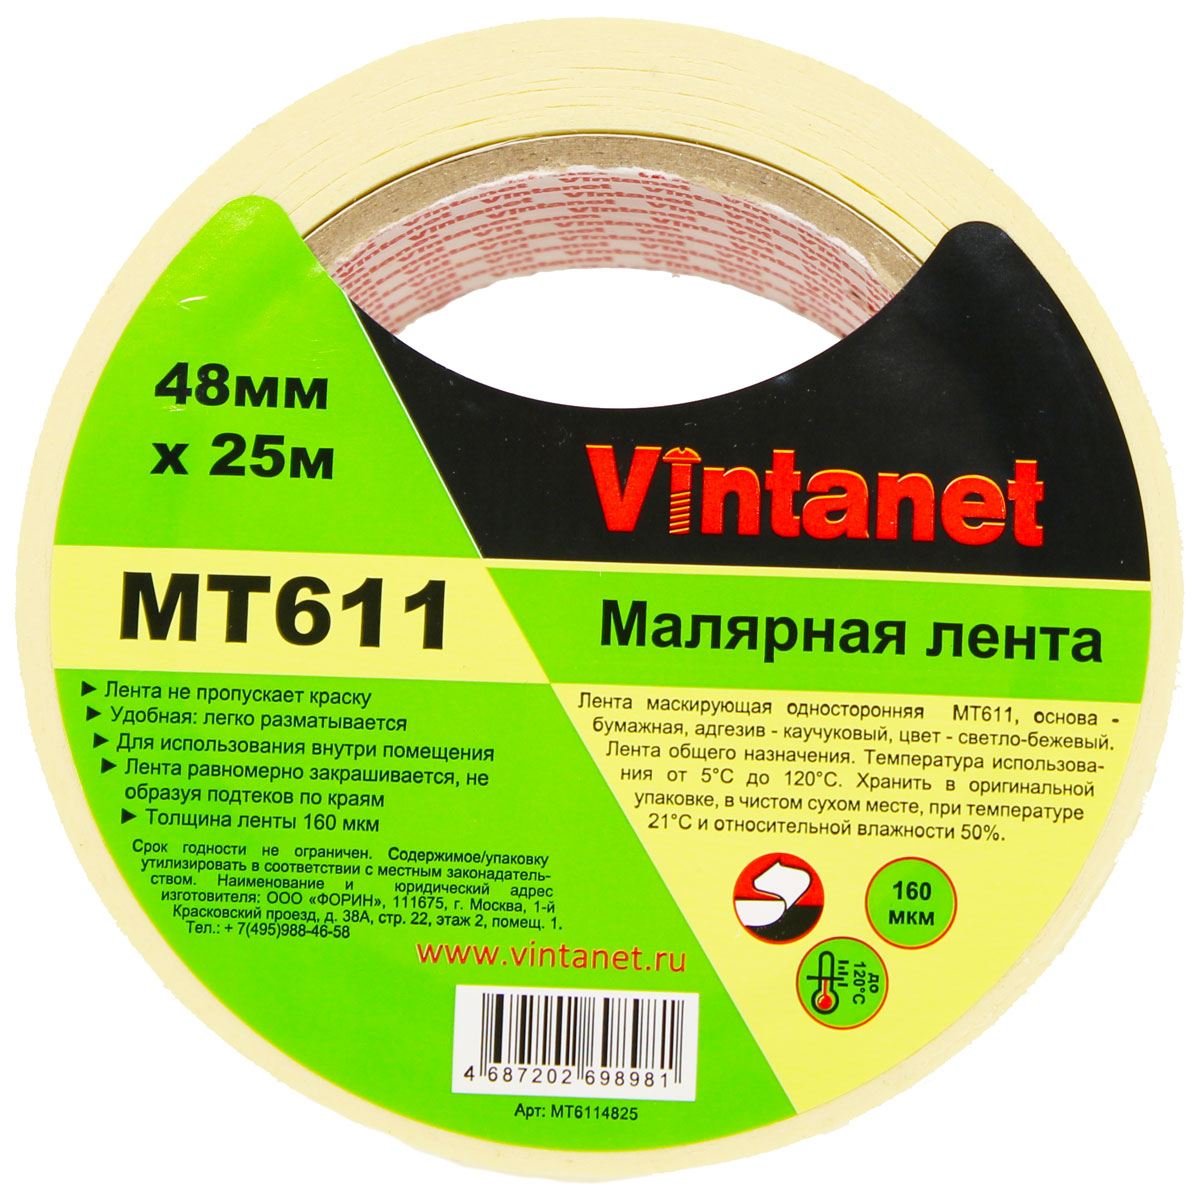 Лента малярная высокотемпературная Vintanet MT611, 120 С, 160 мкм, 48мм х 25м, MT6114825 малярная клейкая лента белая 30 мм х 50 м